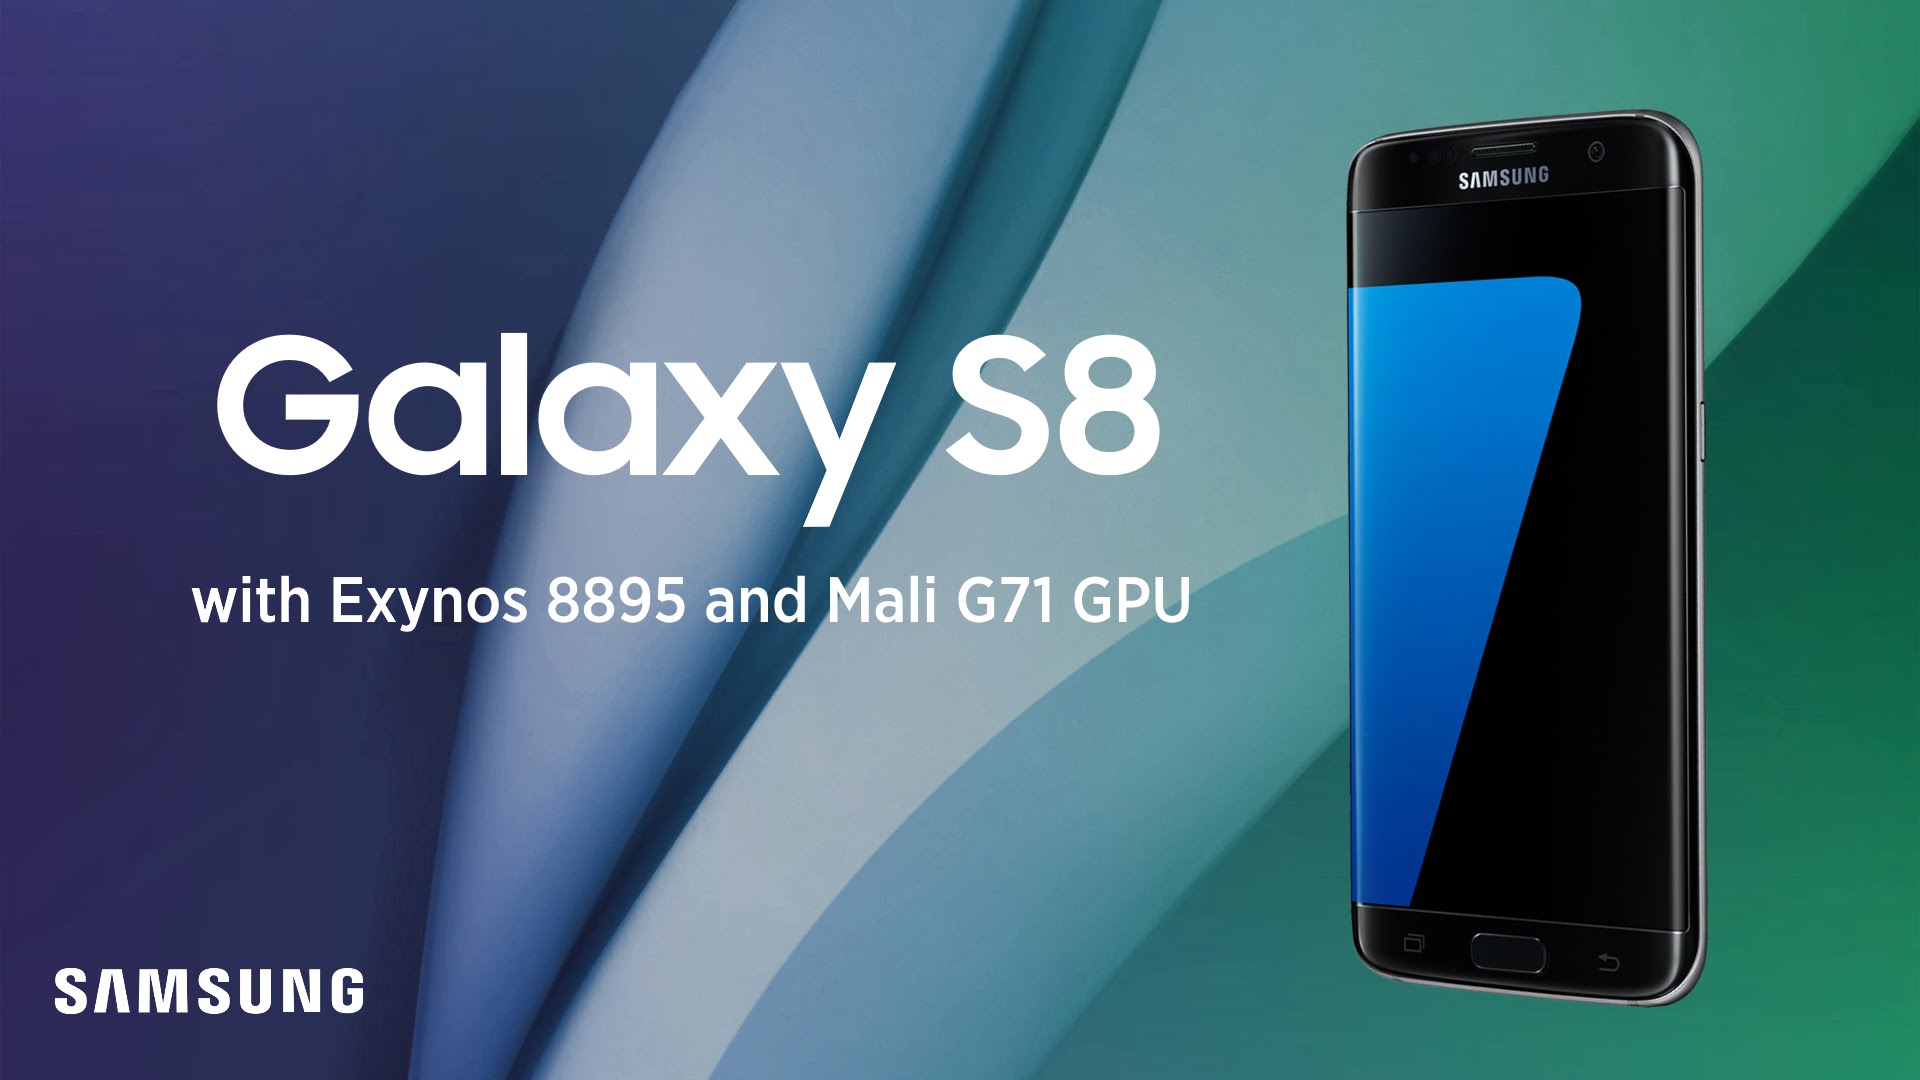 Tổng hợp những thông tin rò rỉ về Samsung Galaxy S8